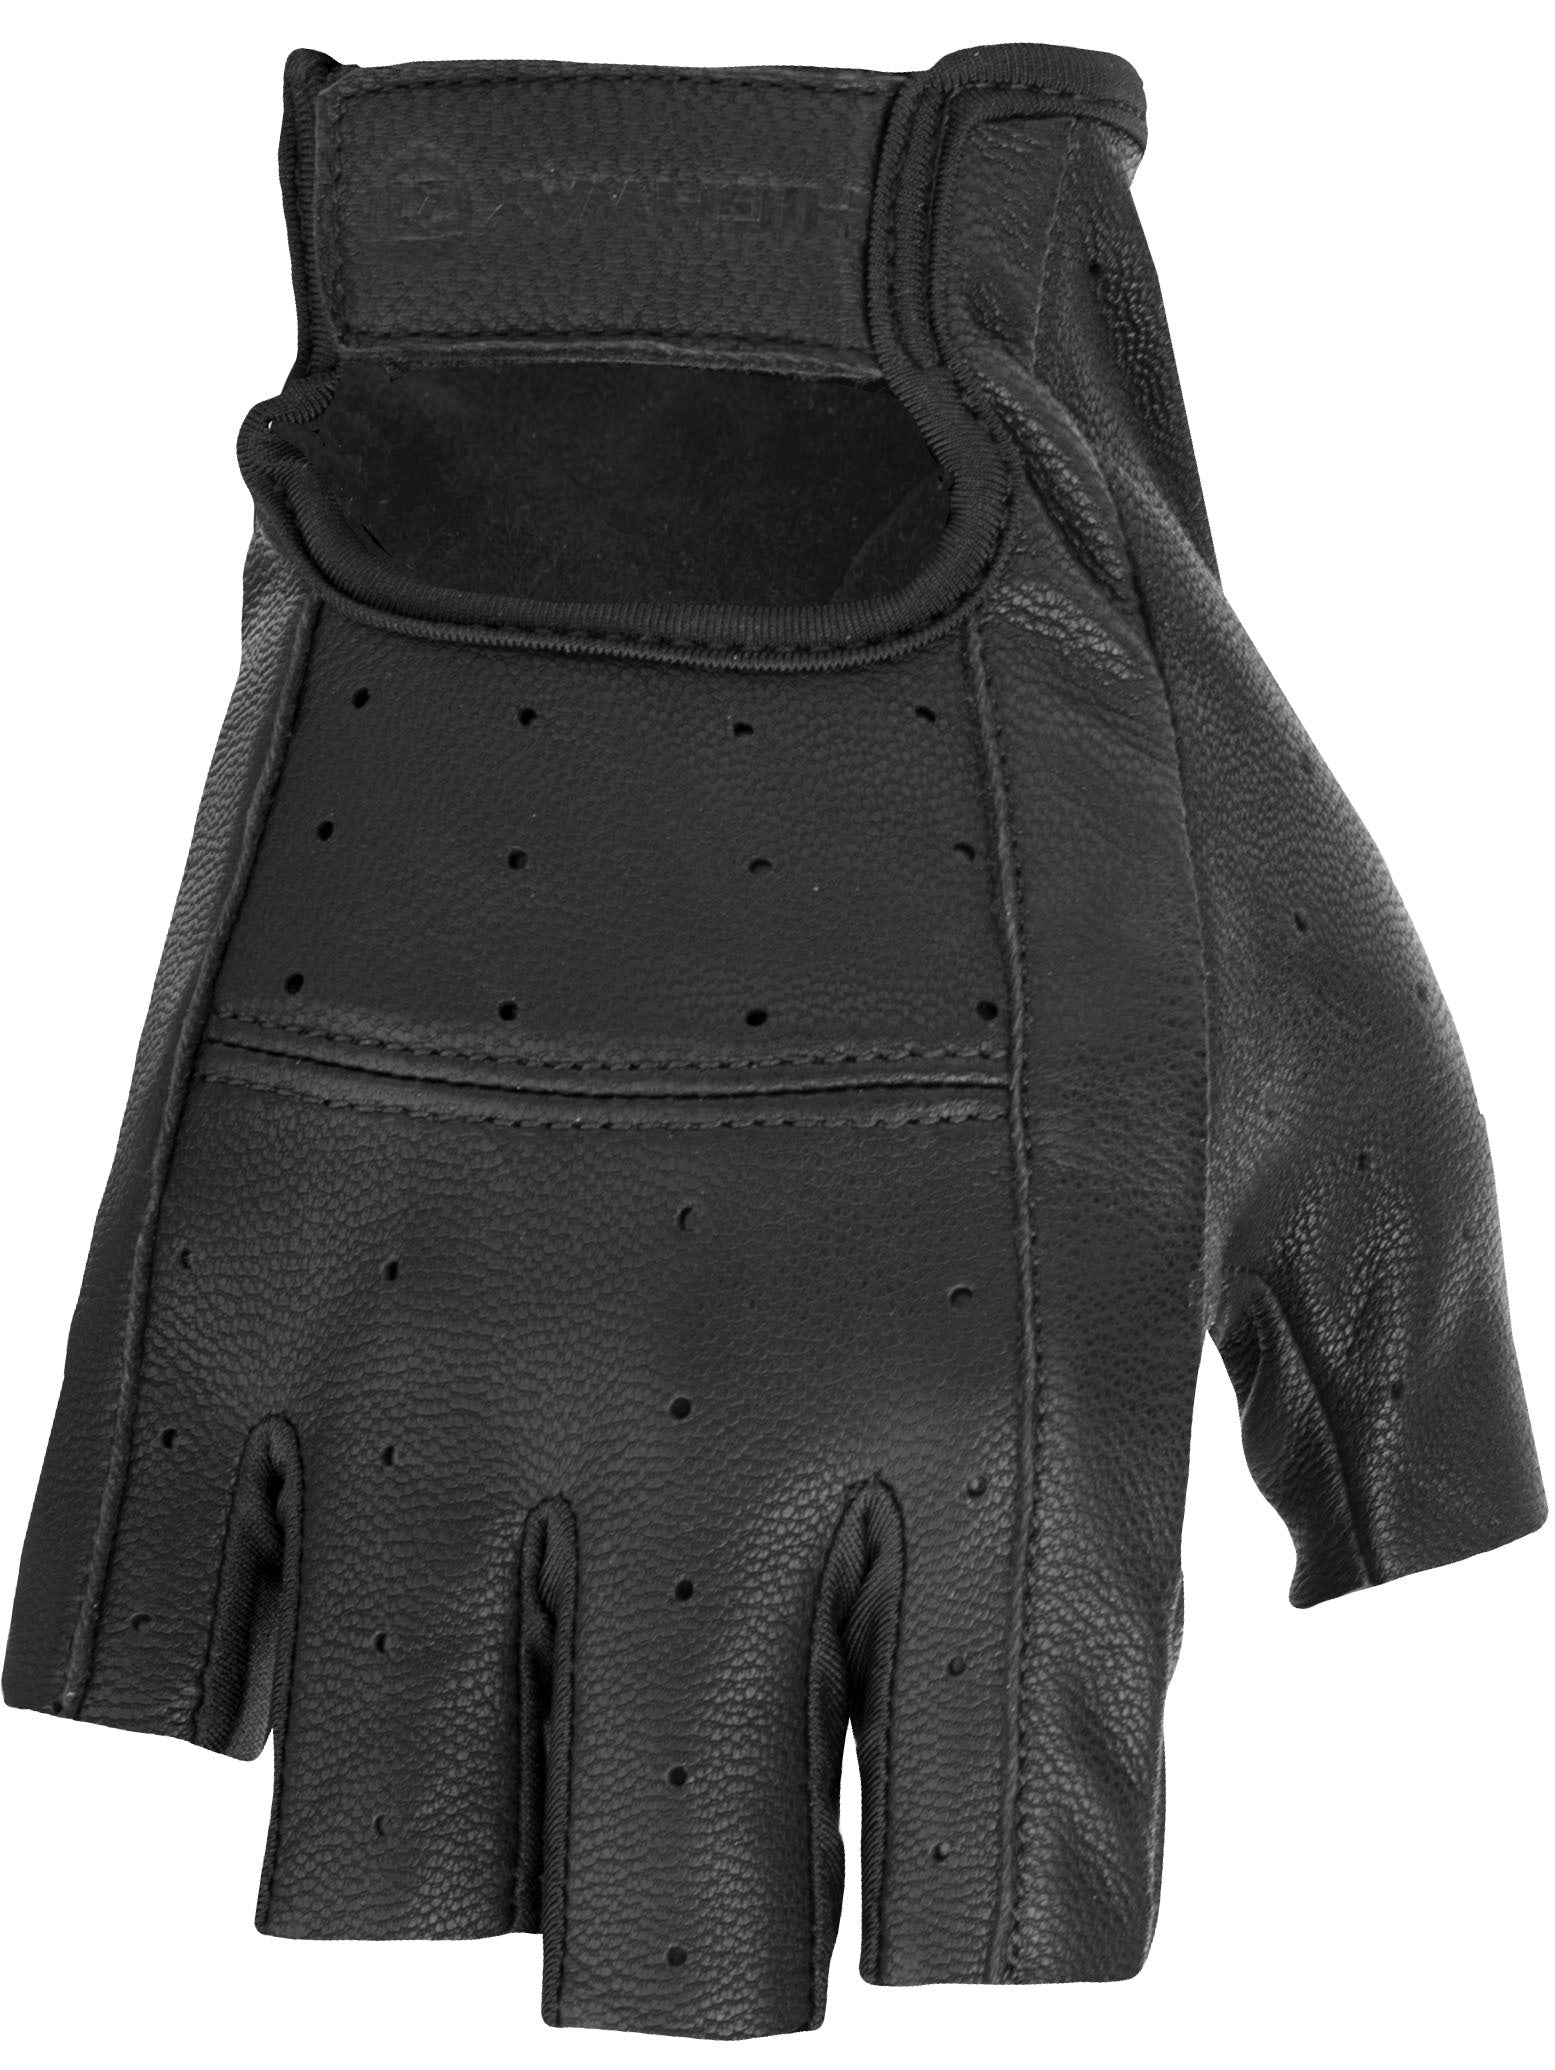 Ranger Gloves Black Lg